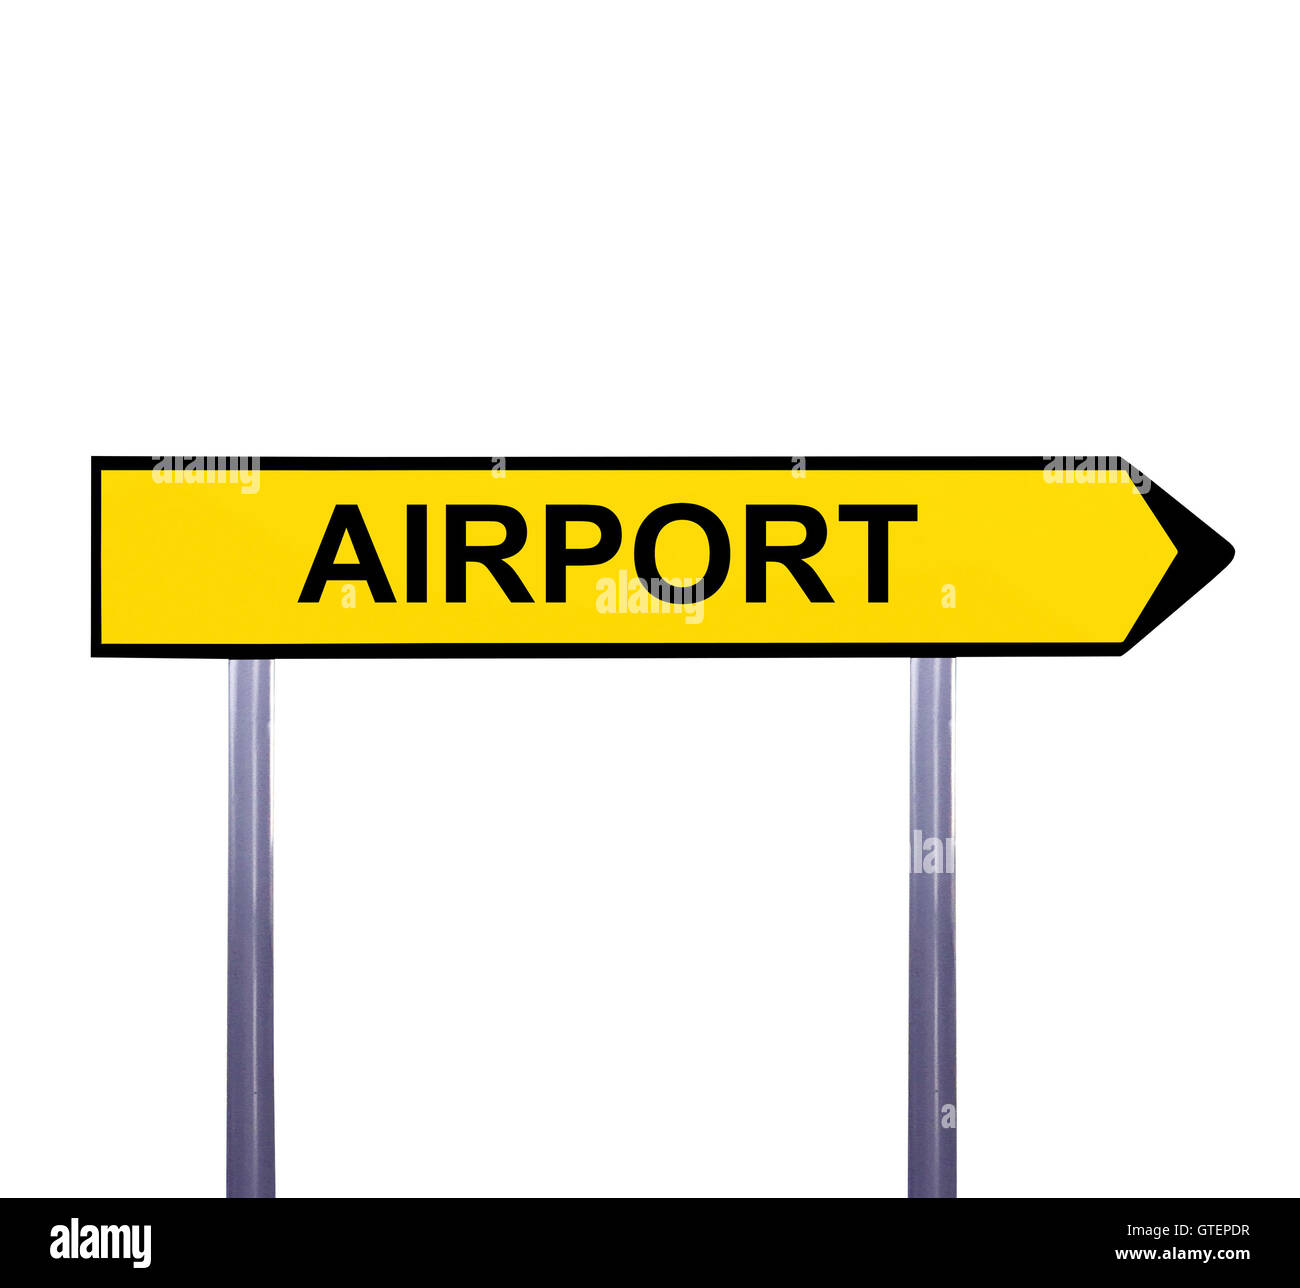 Konzeptionelle Pfeilzeichen isoliert auf weiss - Flughafen Stockfoto